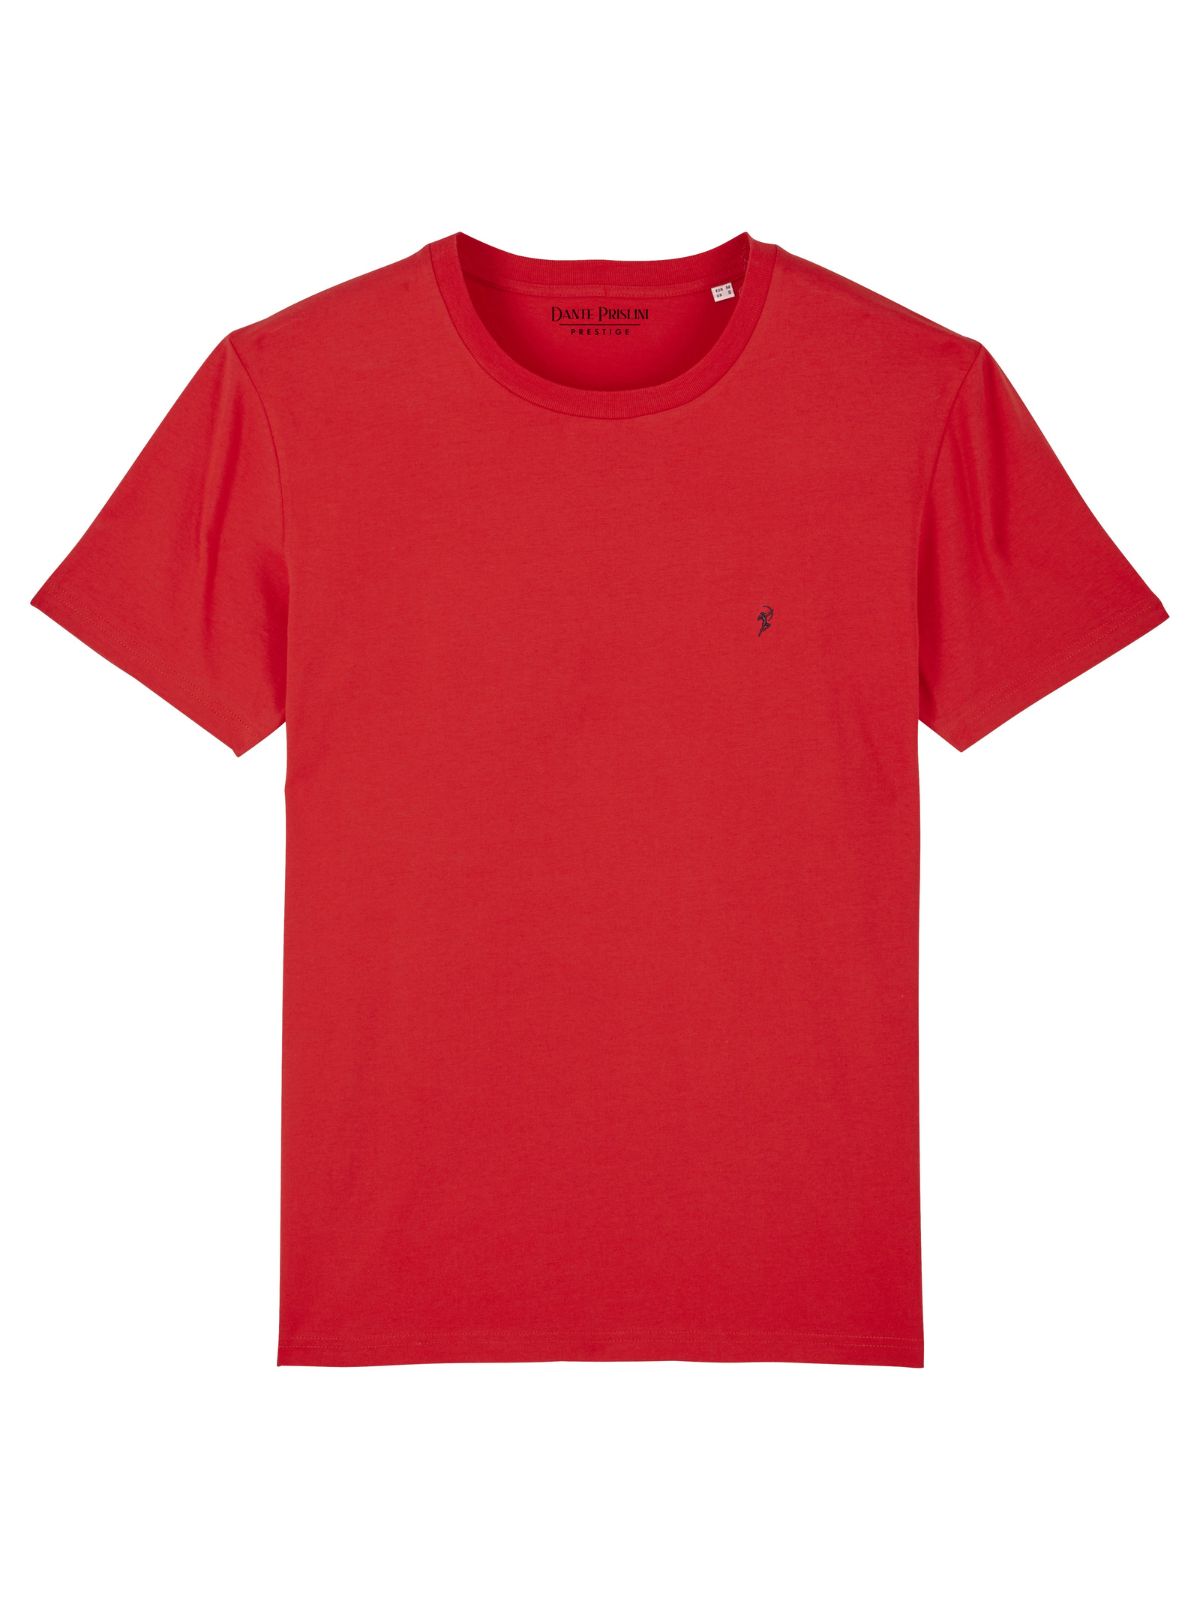 Herren T-Shirt Red